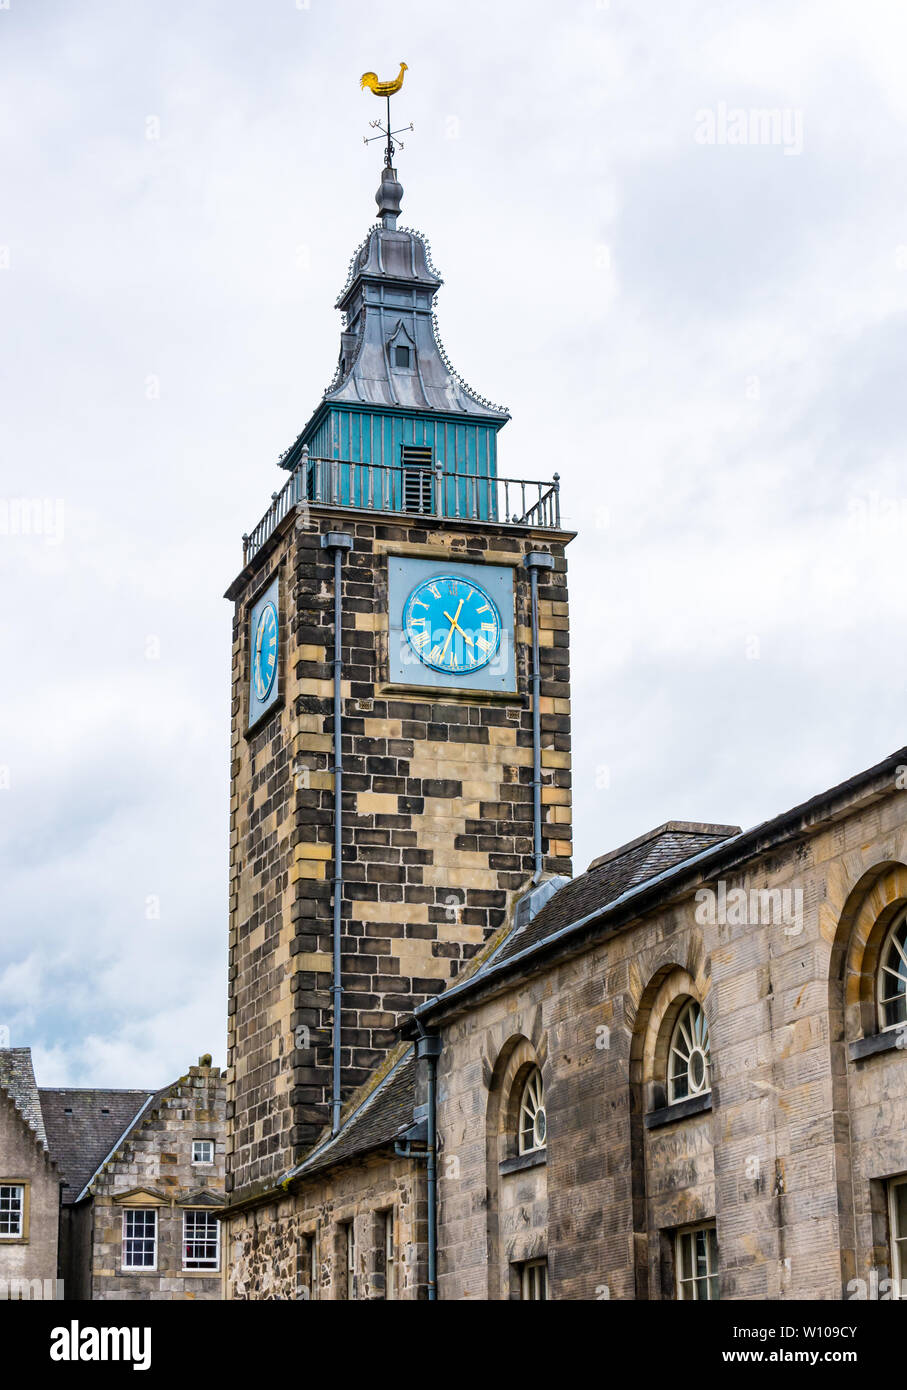 Tall vecchia storica torre dell'orologio di Tolbooth, Stirling Old Town, Scotland, Regno Unito Foto Stock